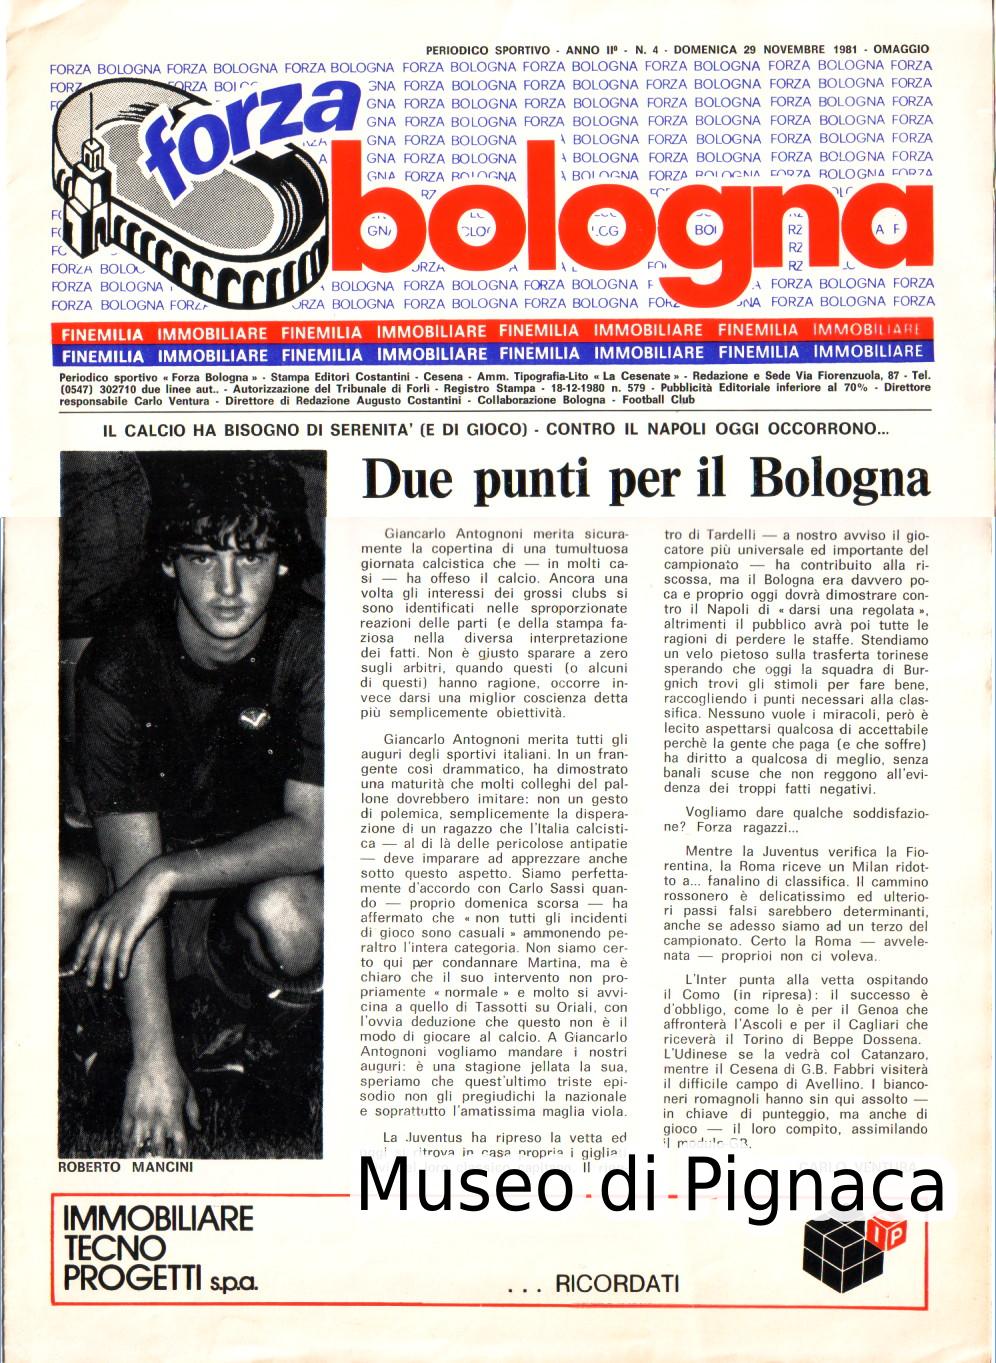 1981 (29 novembre) Fanzine partita Bologna vs Napoli (Roberto Mancini in prima pagina)